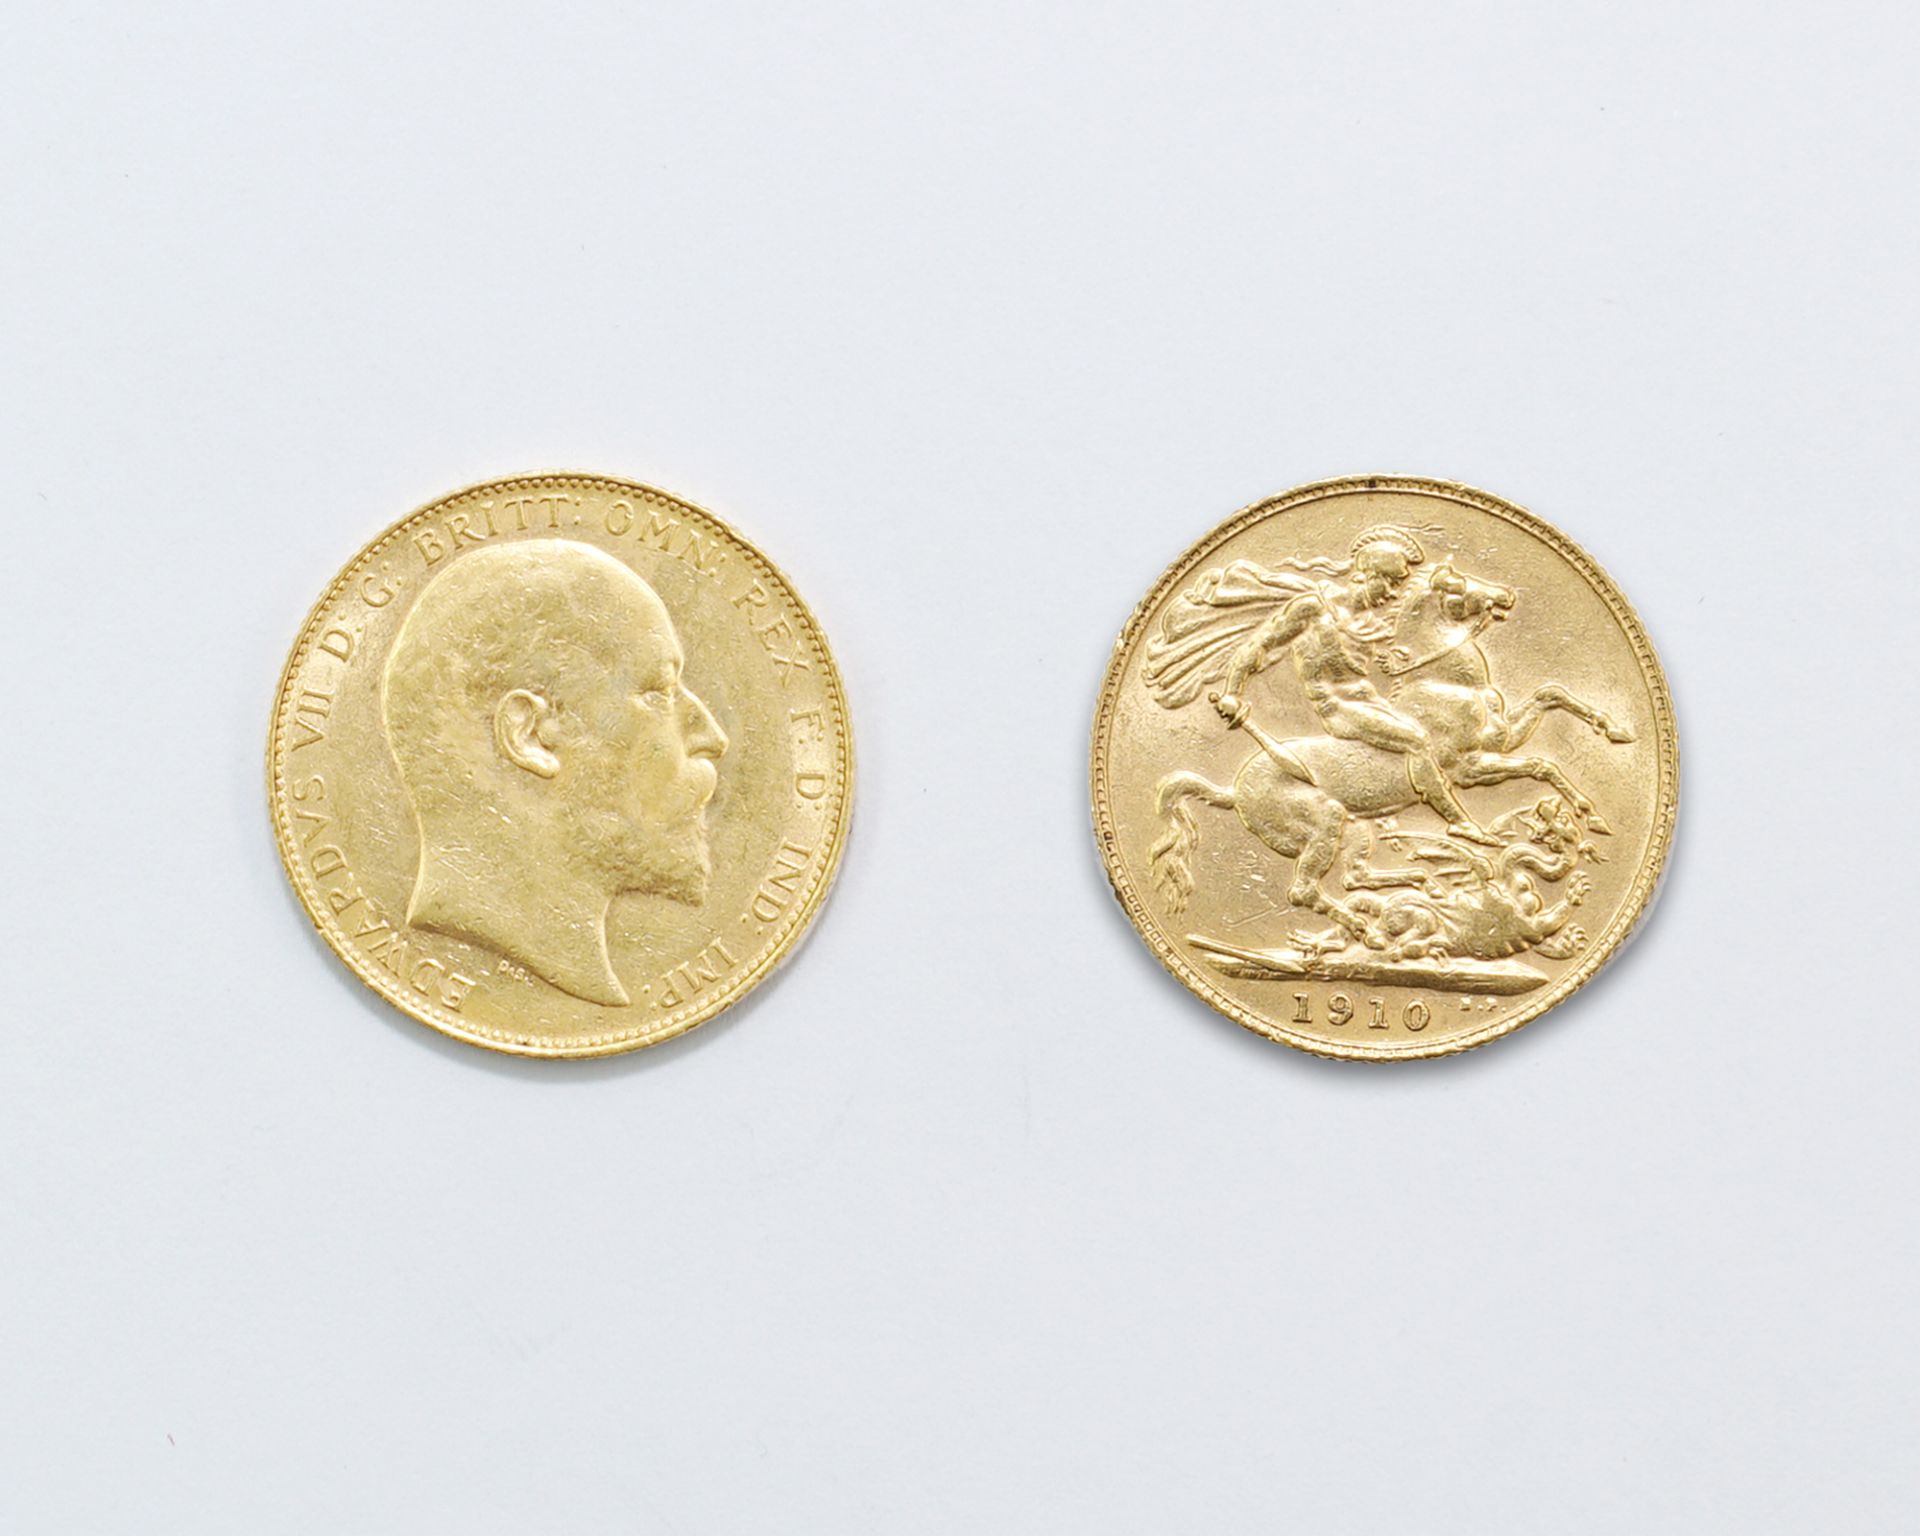 Goldmünze Sovereign Großbritannien 1910